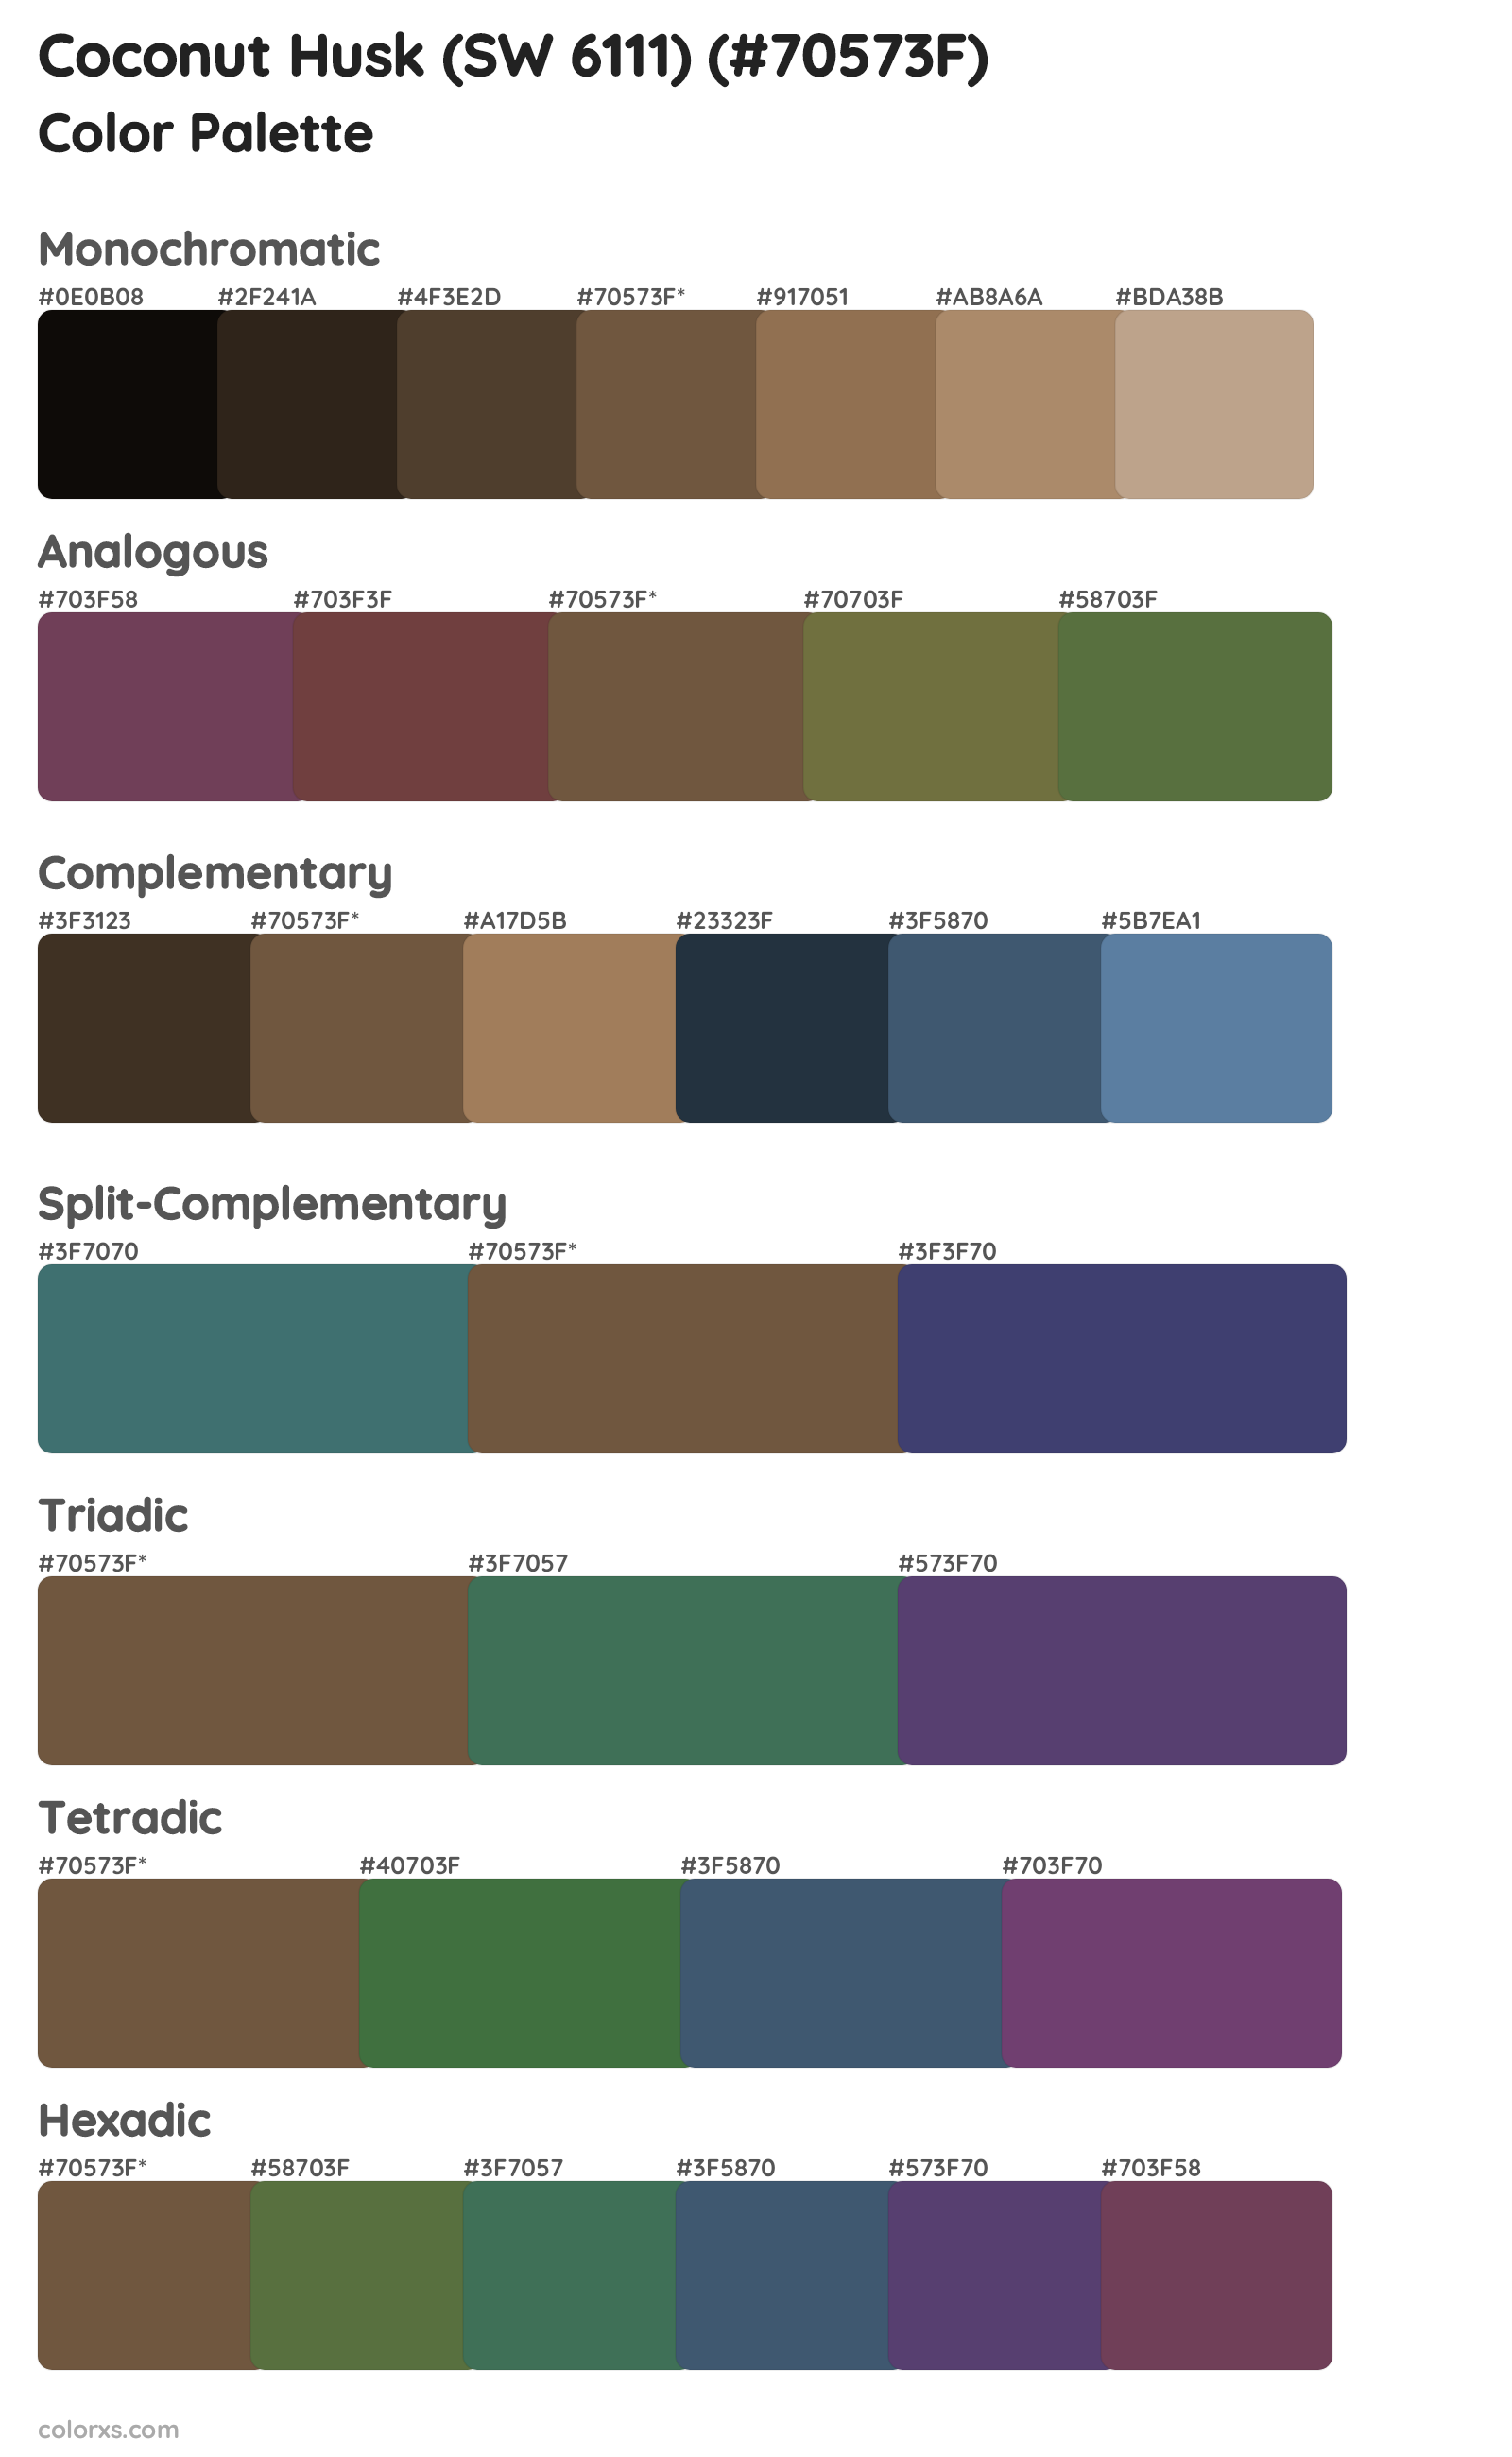 Coconut Husk (SW 6111) Color Scheme Palettes